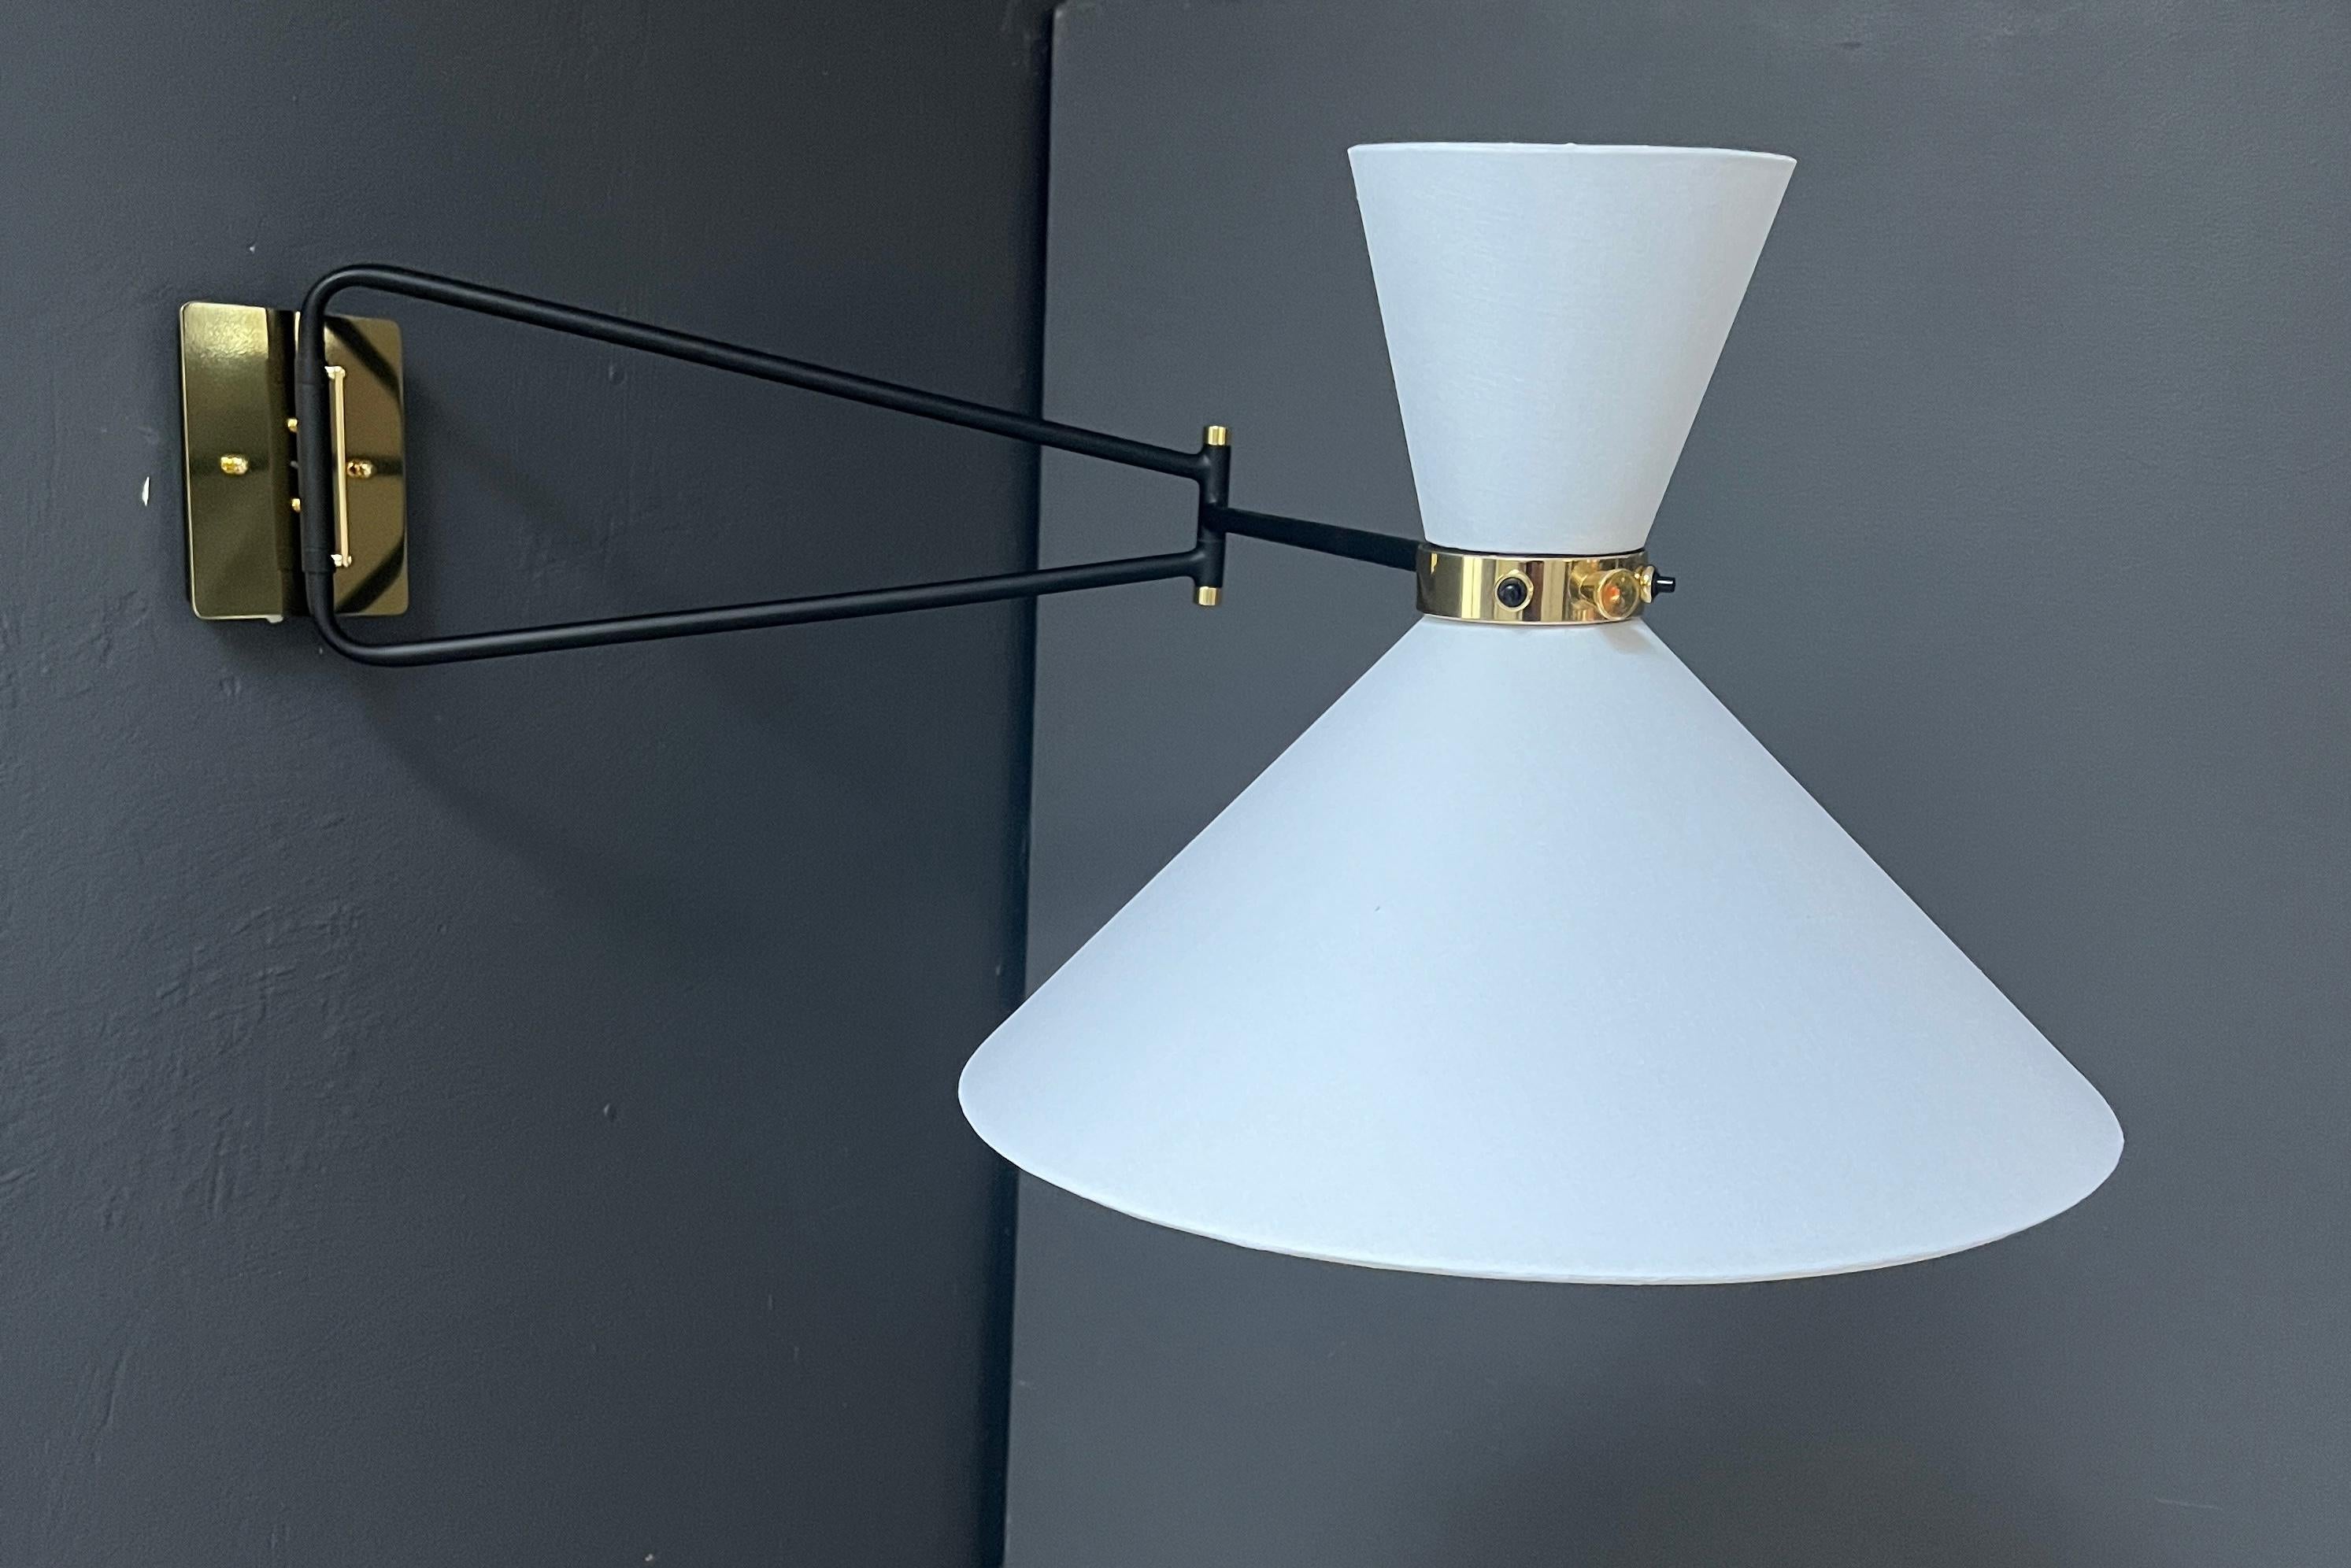 Diese elegante Leuchte ist von der französischen Midcentury-Mode der 1950er Jahre inspiriert. Die Leuchte mit ihrem doppelten Schirm und dem Gelenkarm ist eine vielseitige Lichtquelle. Der Kopf ist schwenkbar, um das Licht der beiden